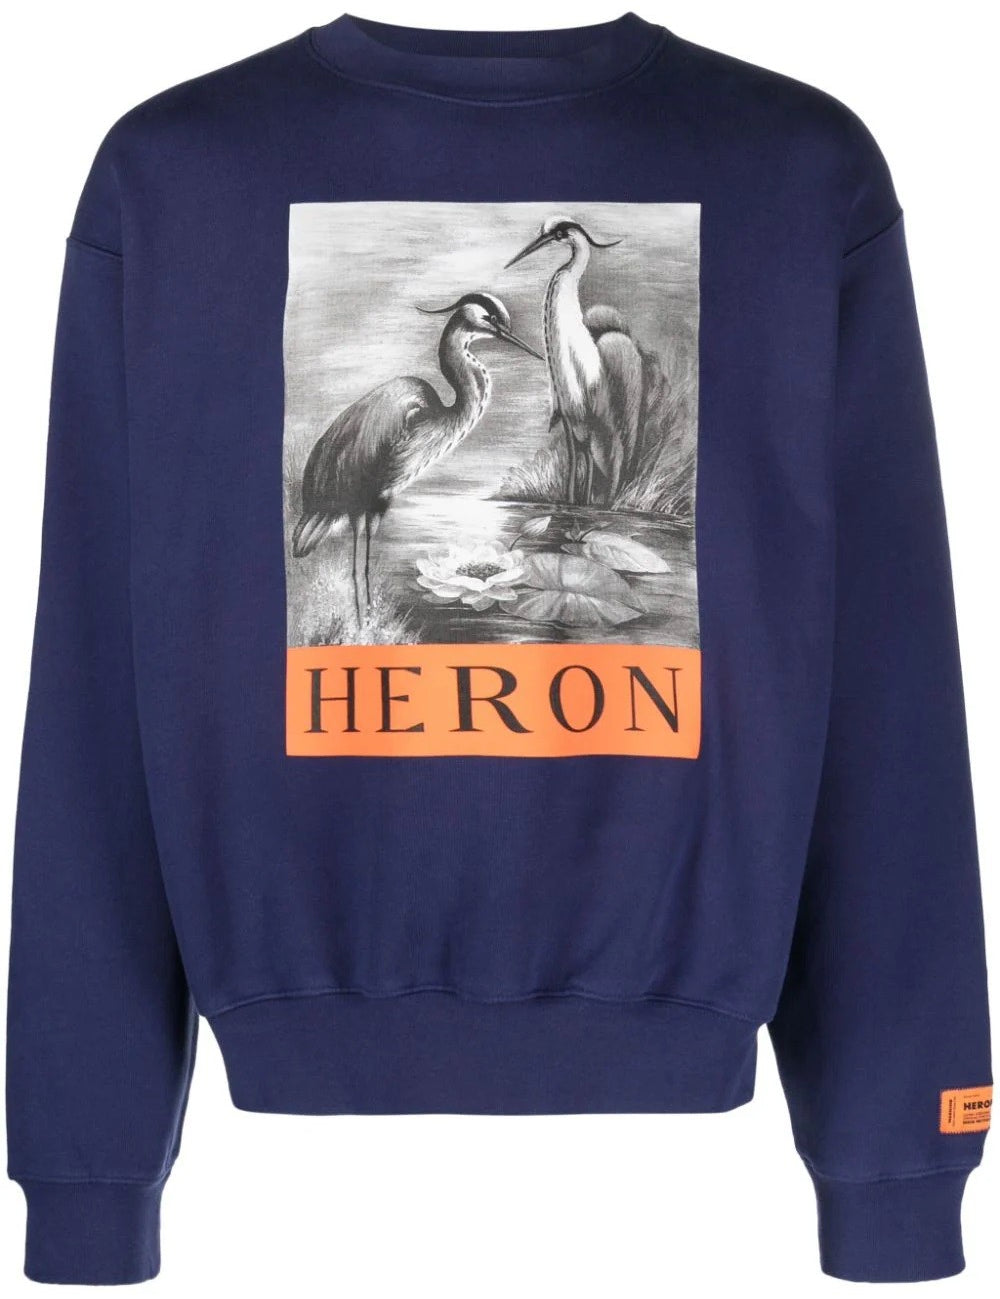 heron-bird-crewneck-sweater.jpg